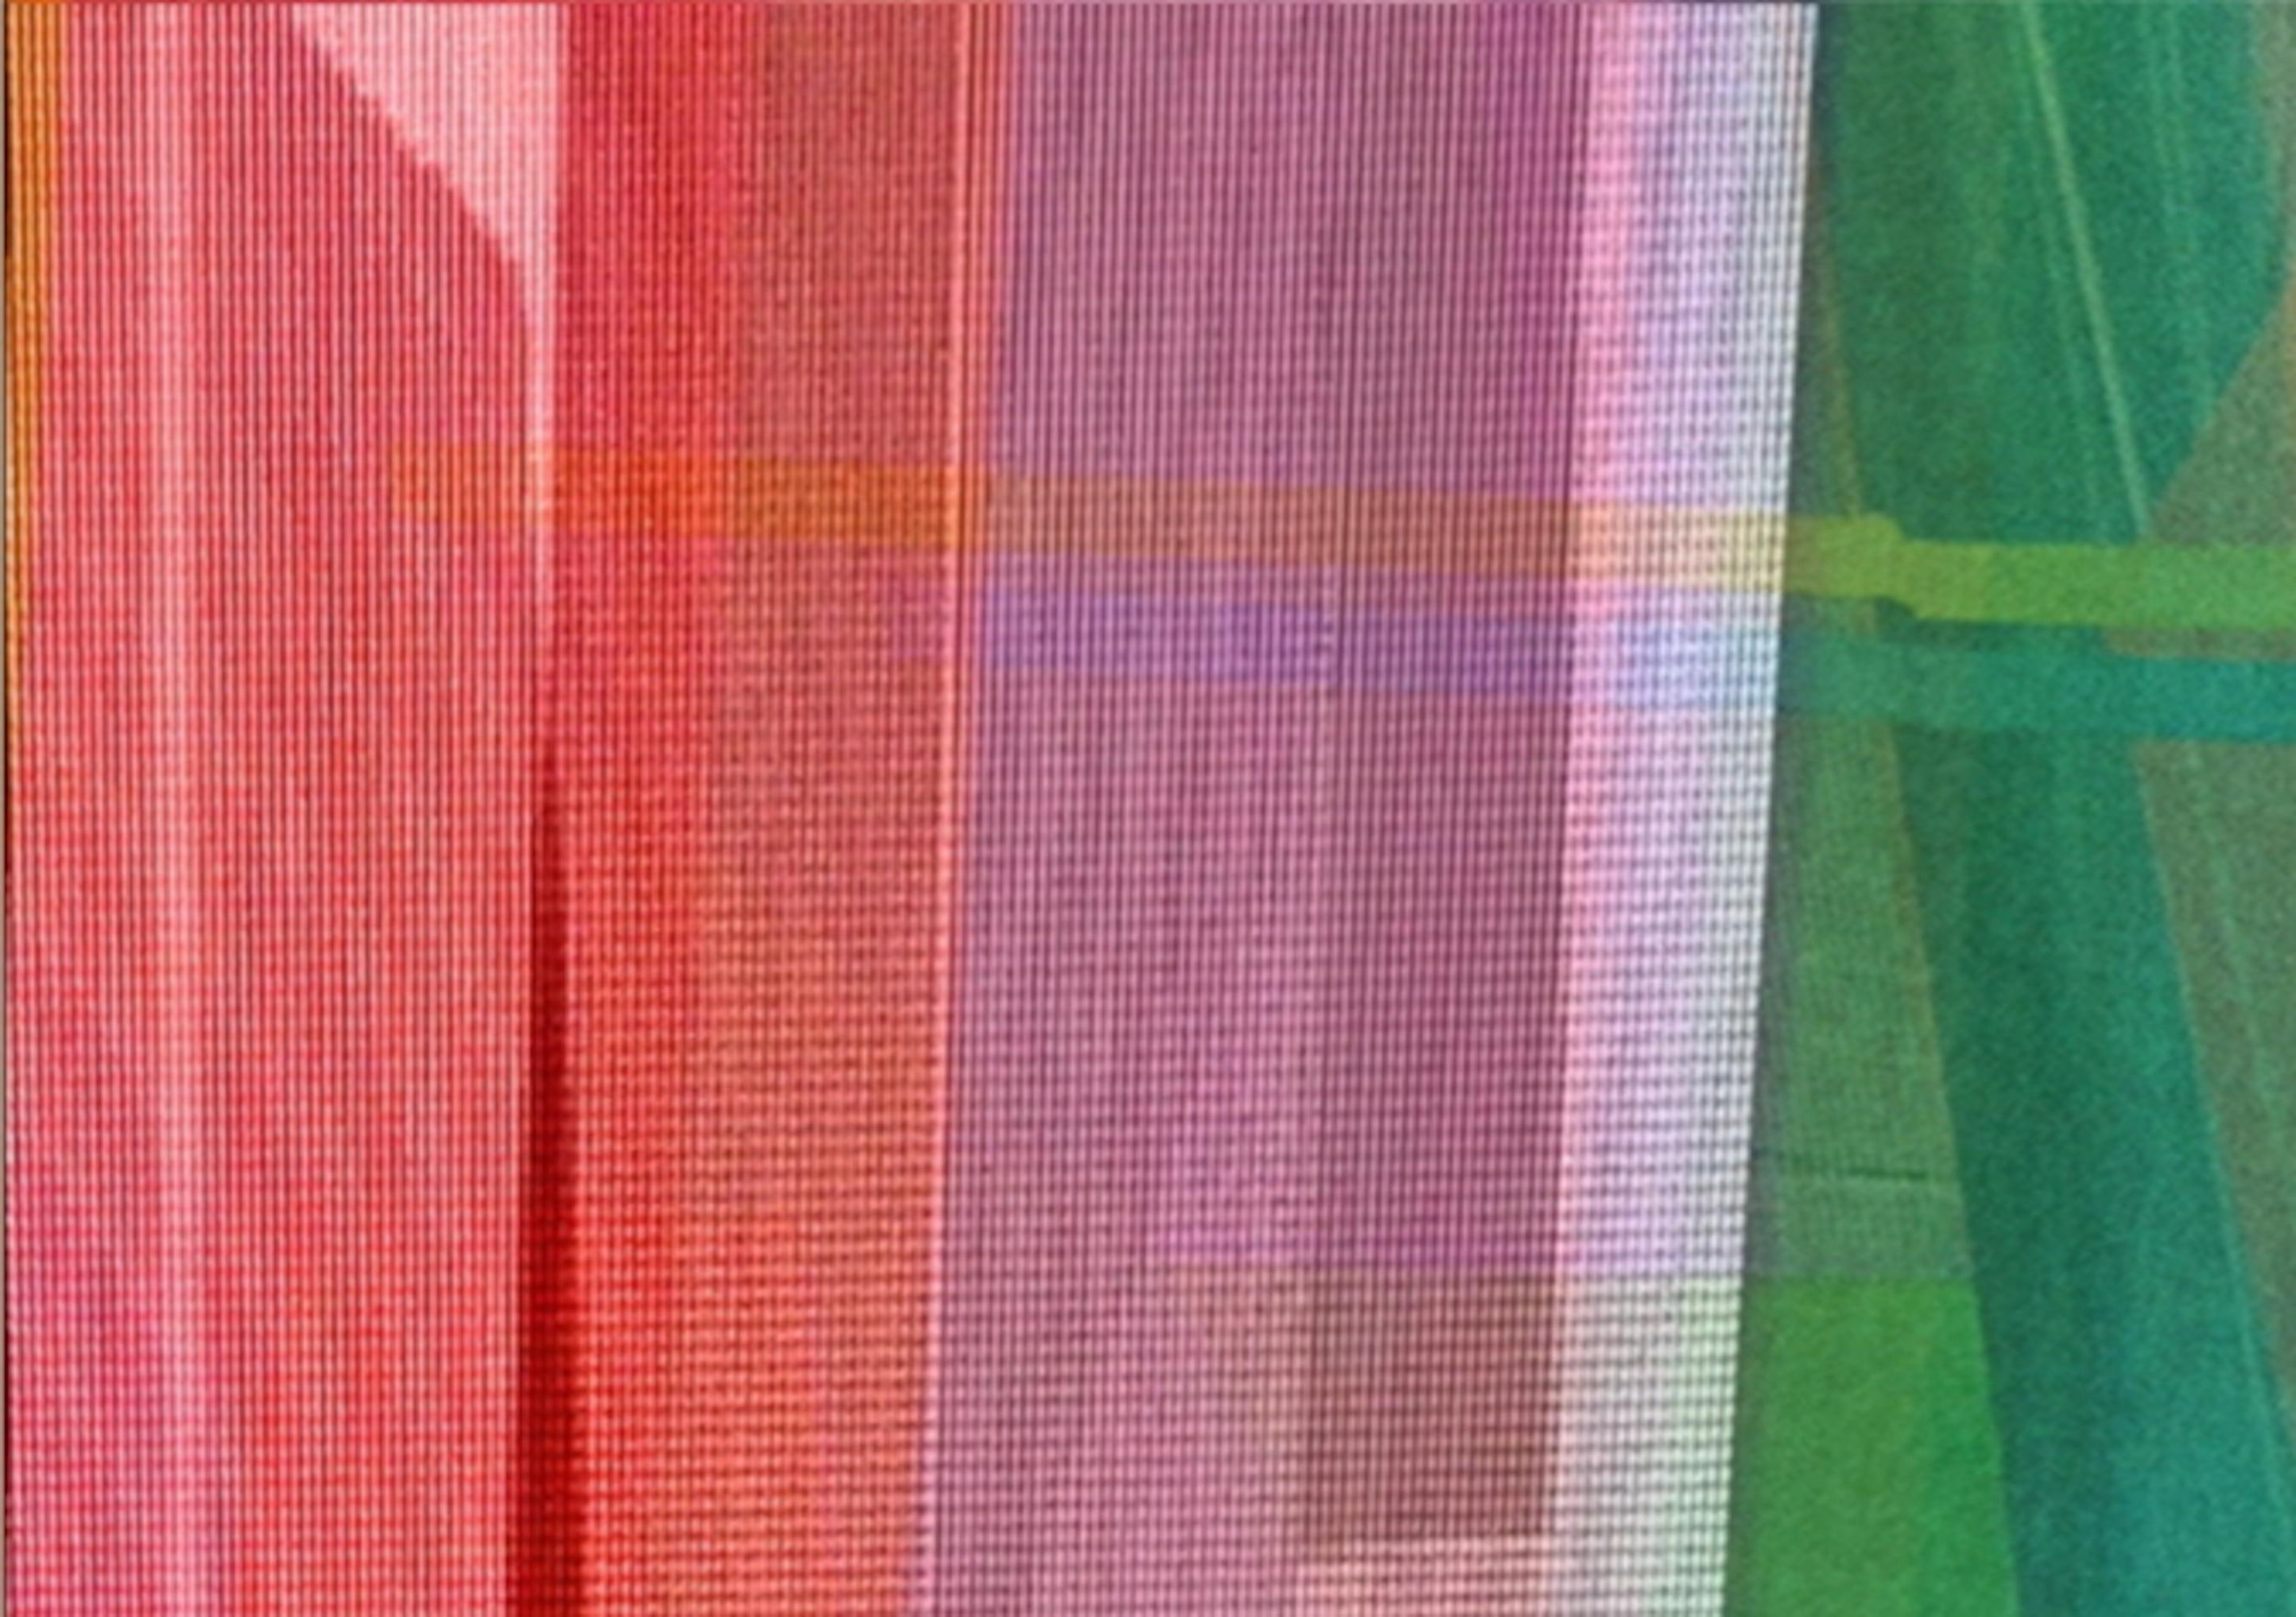 Zeitlos 15. Abstrakte Farbfotografie in limitierter Auflage (Grau), Abstract Photograph, von Monika Bravo